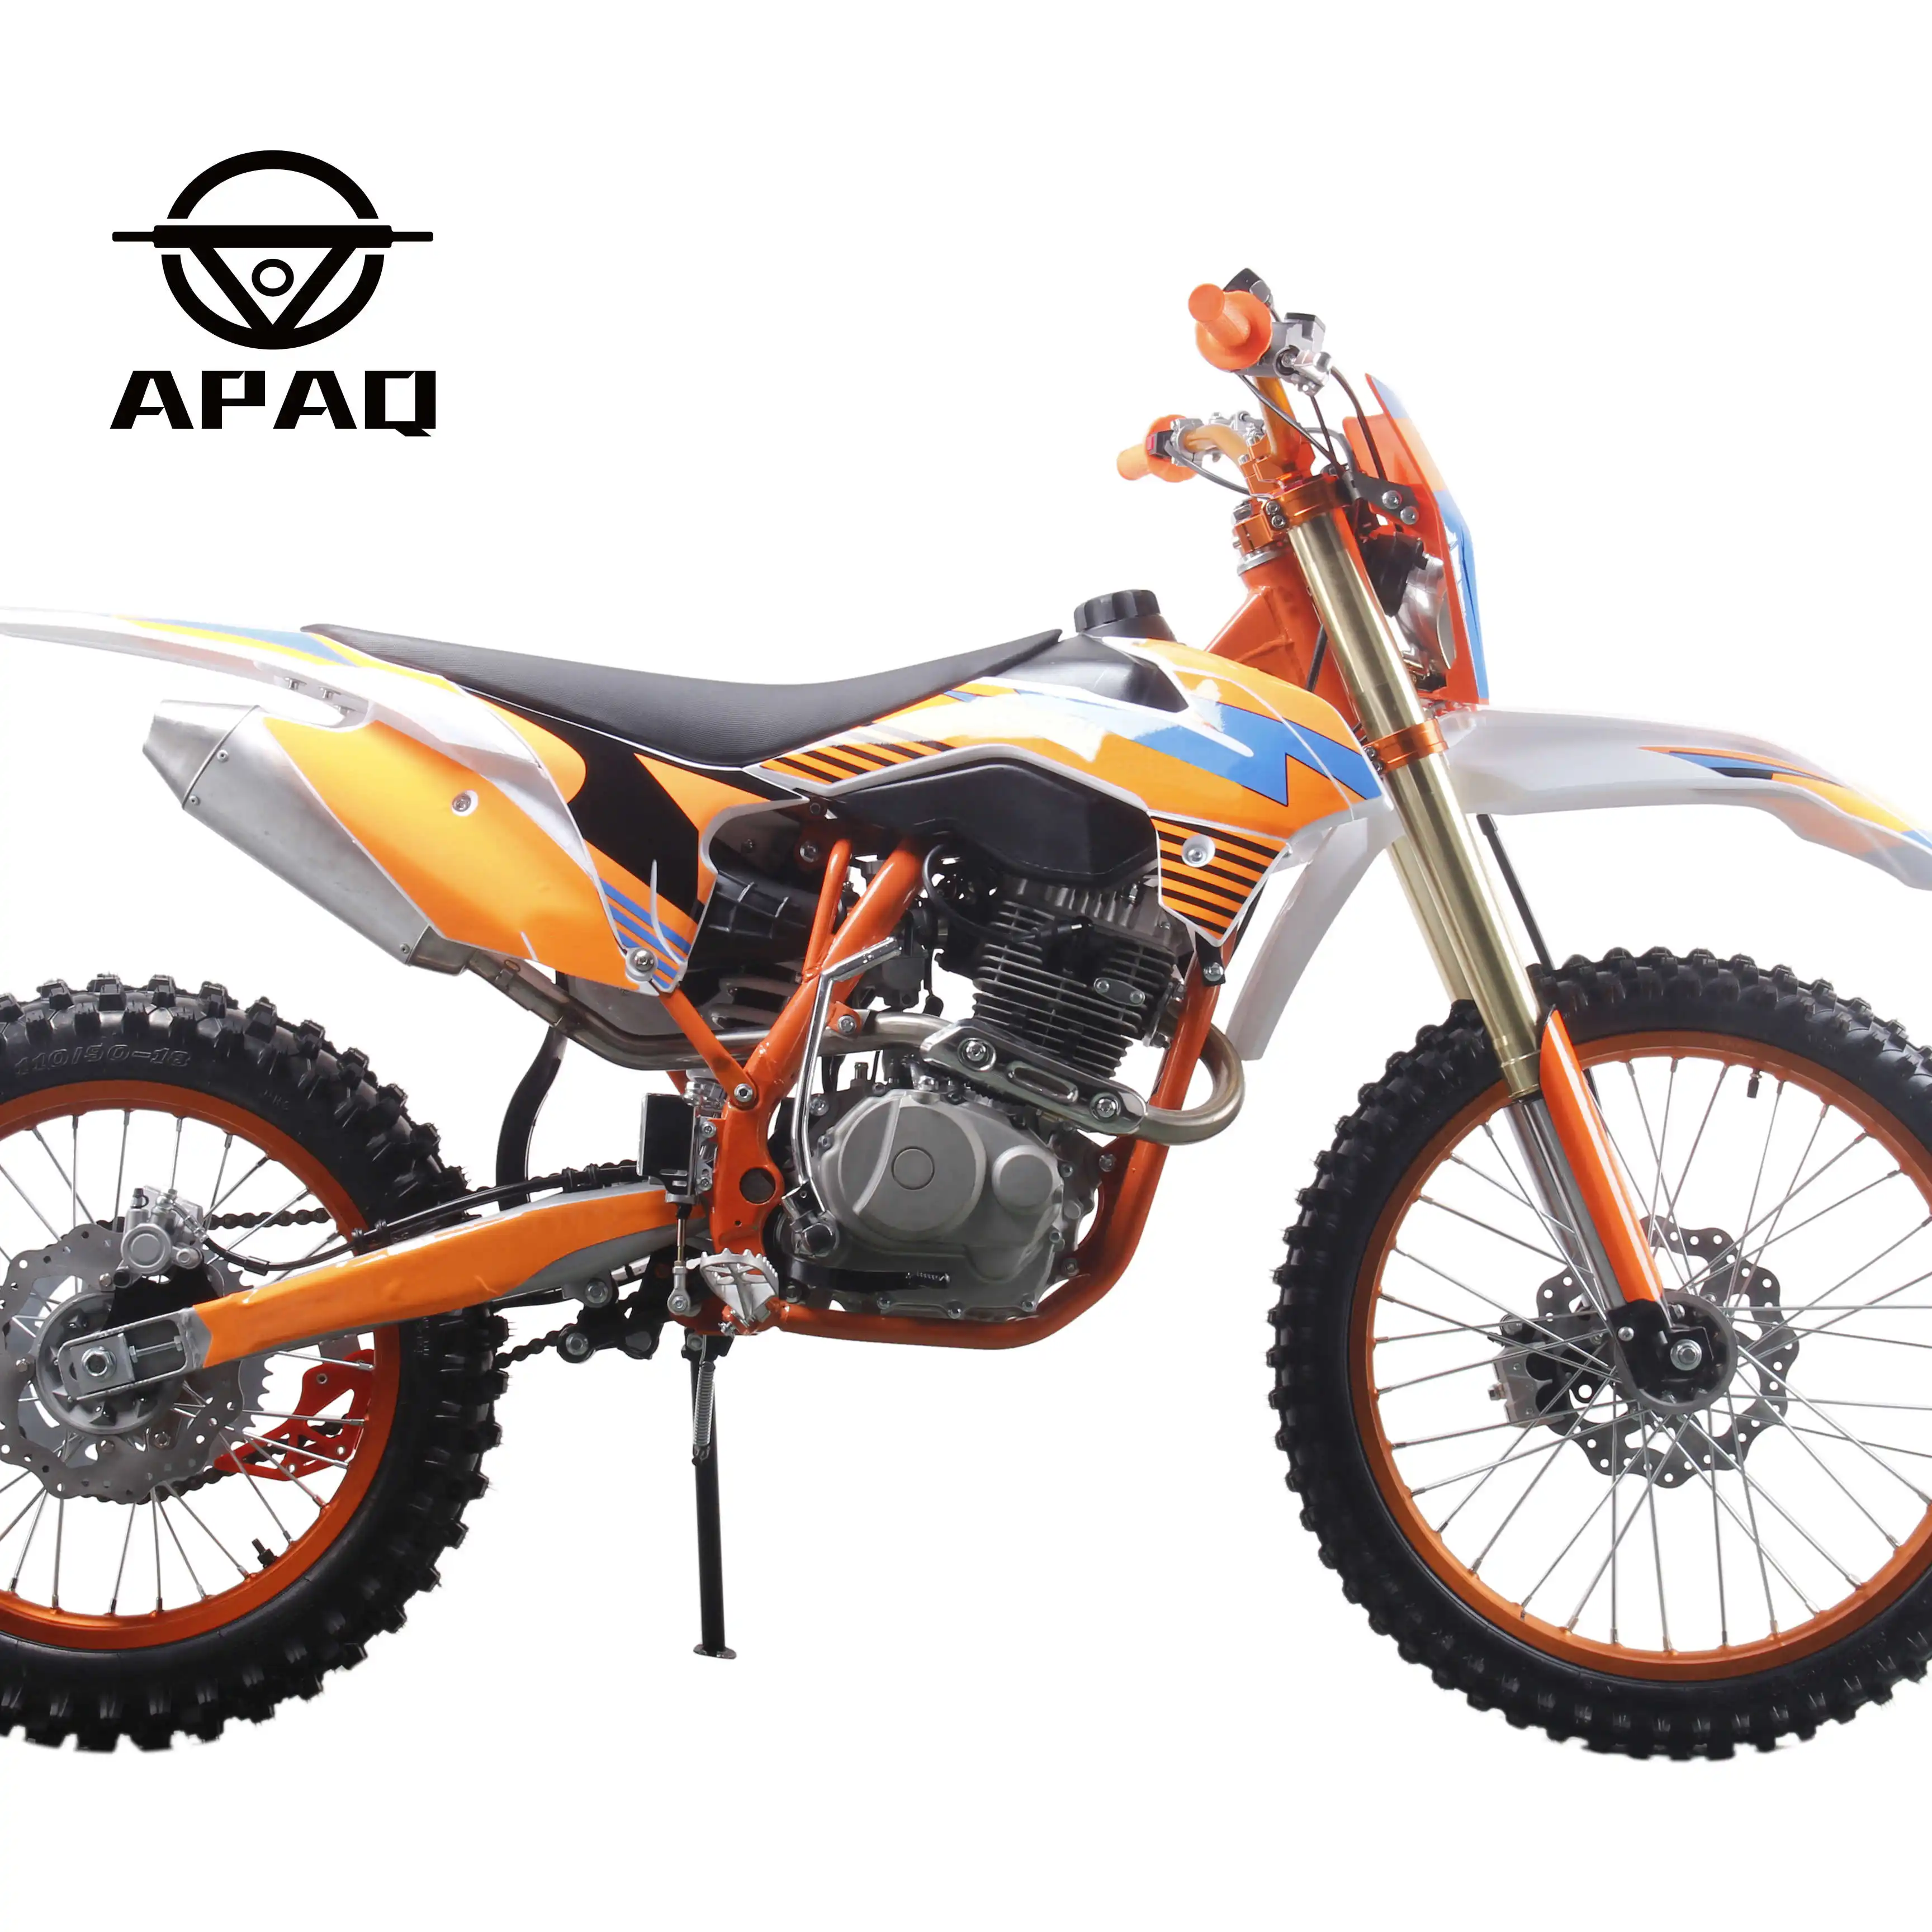 APAQ-دراجة ترابية للبالغين, دراجة نارية حجم كامل تعمل بالغاز بقوة 300 سي سي رباعي الأشواط بسرعة 4 شوط